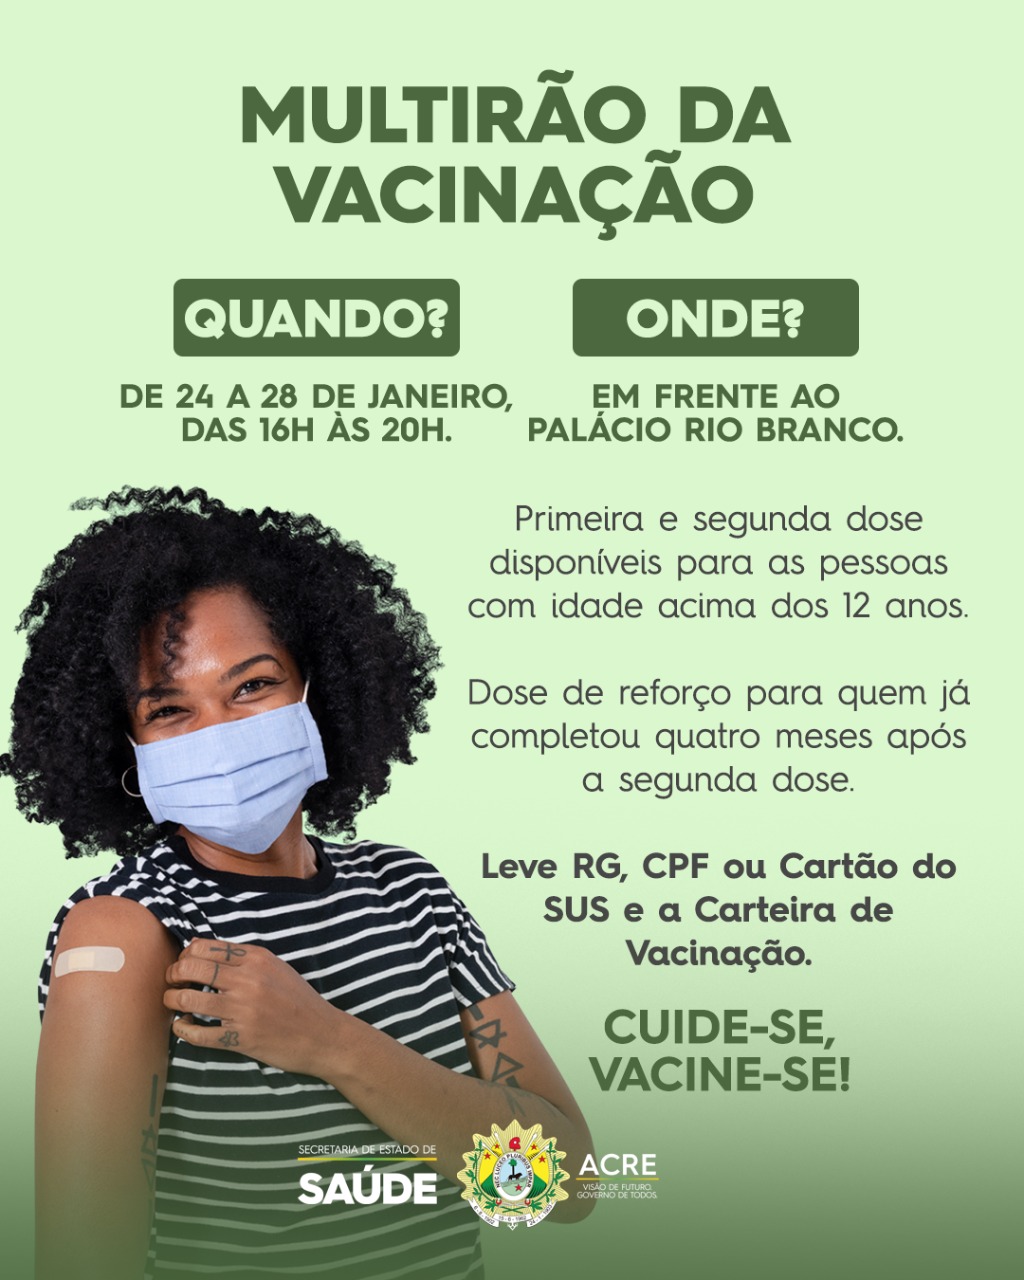 Estado realiza uma semana inteira de vacinação em frente ao Palácio Rio Branco